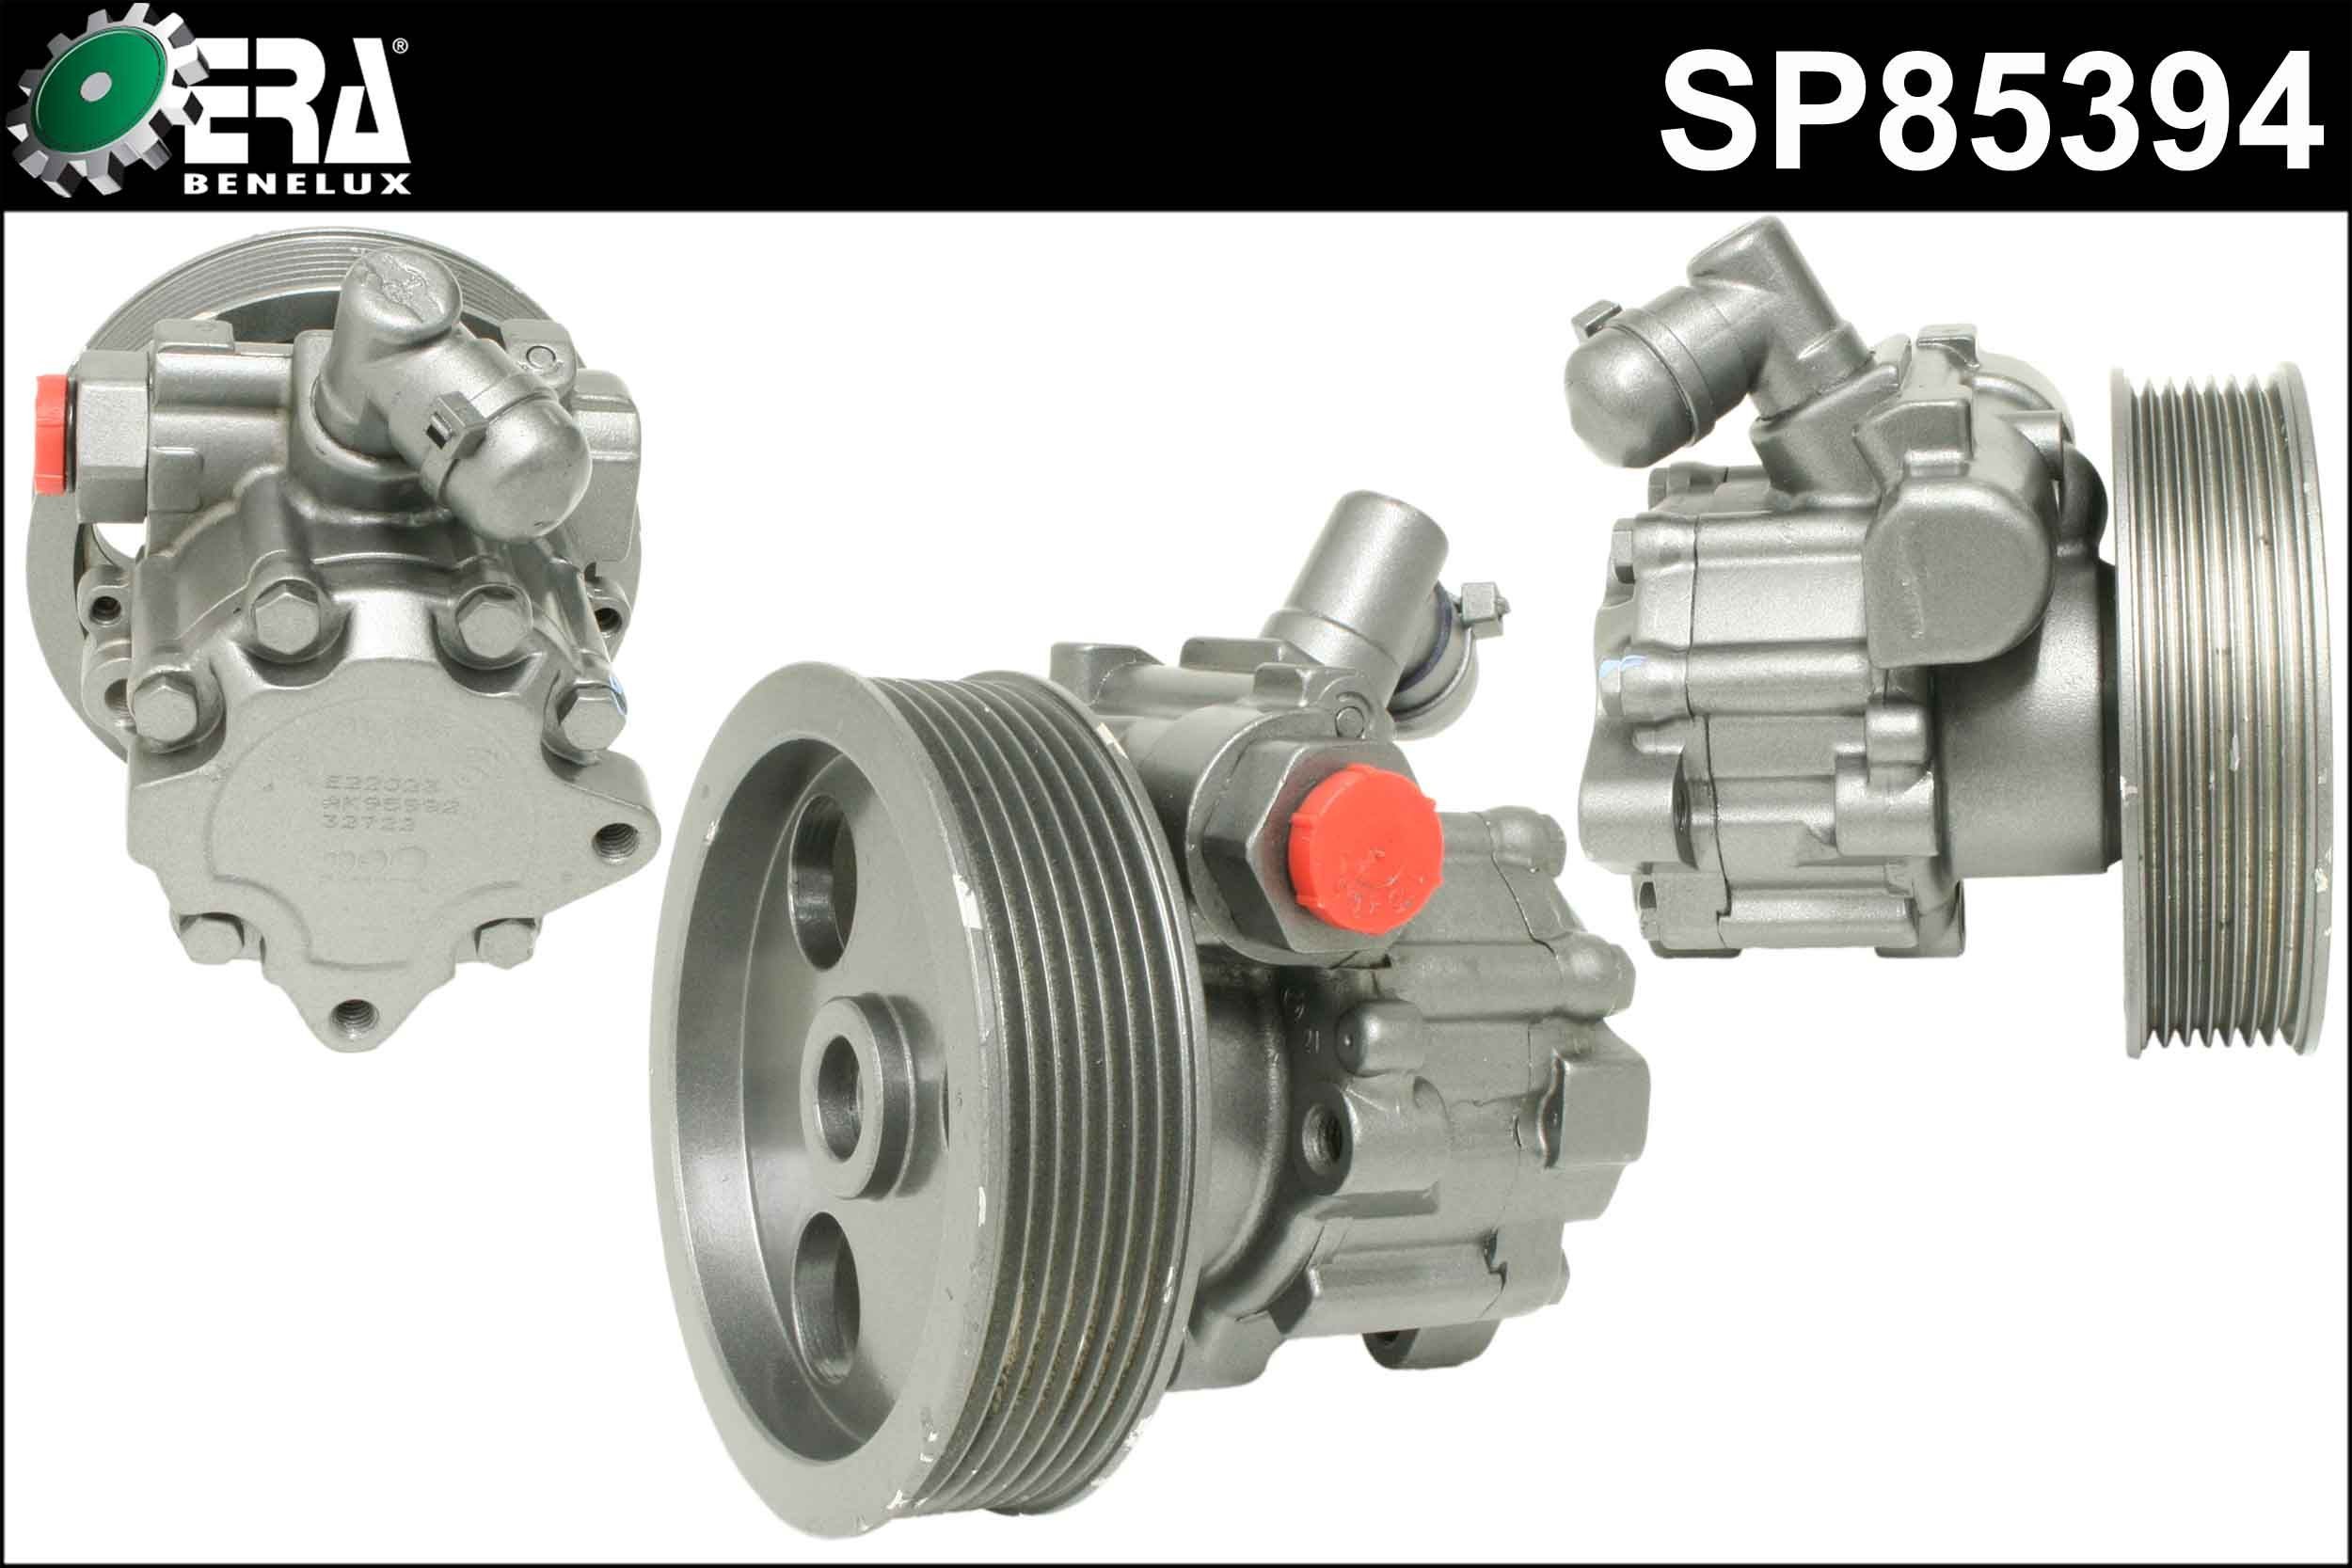 ERA Benelux Steering Pump SP85394 buy